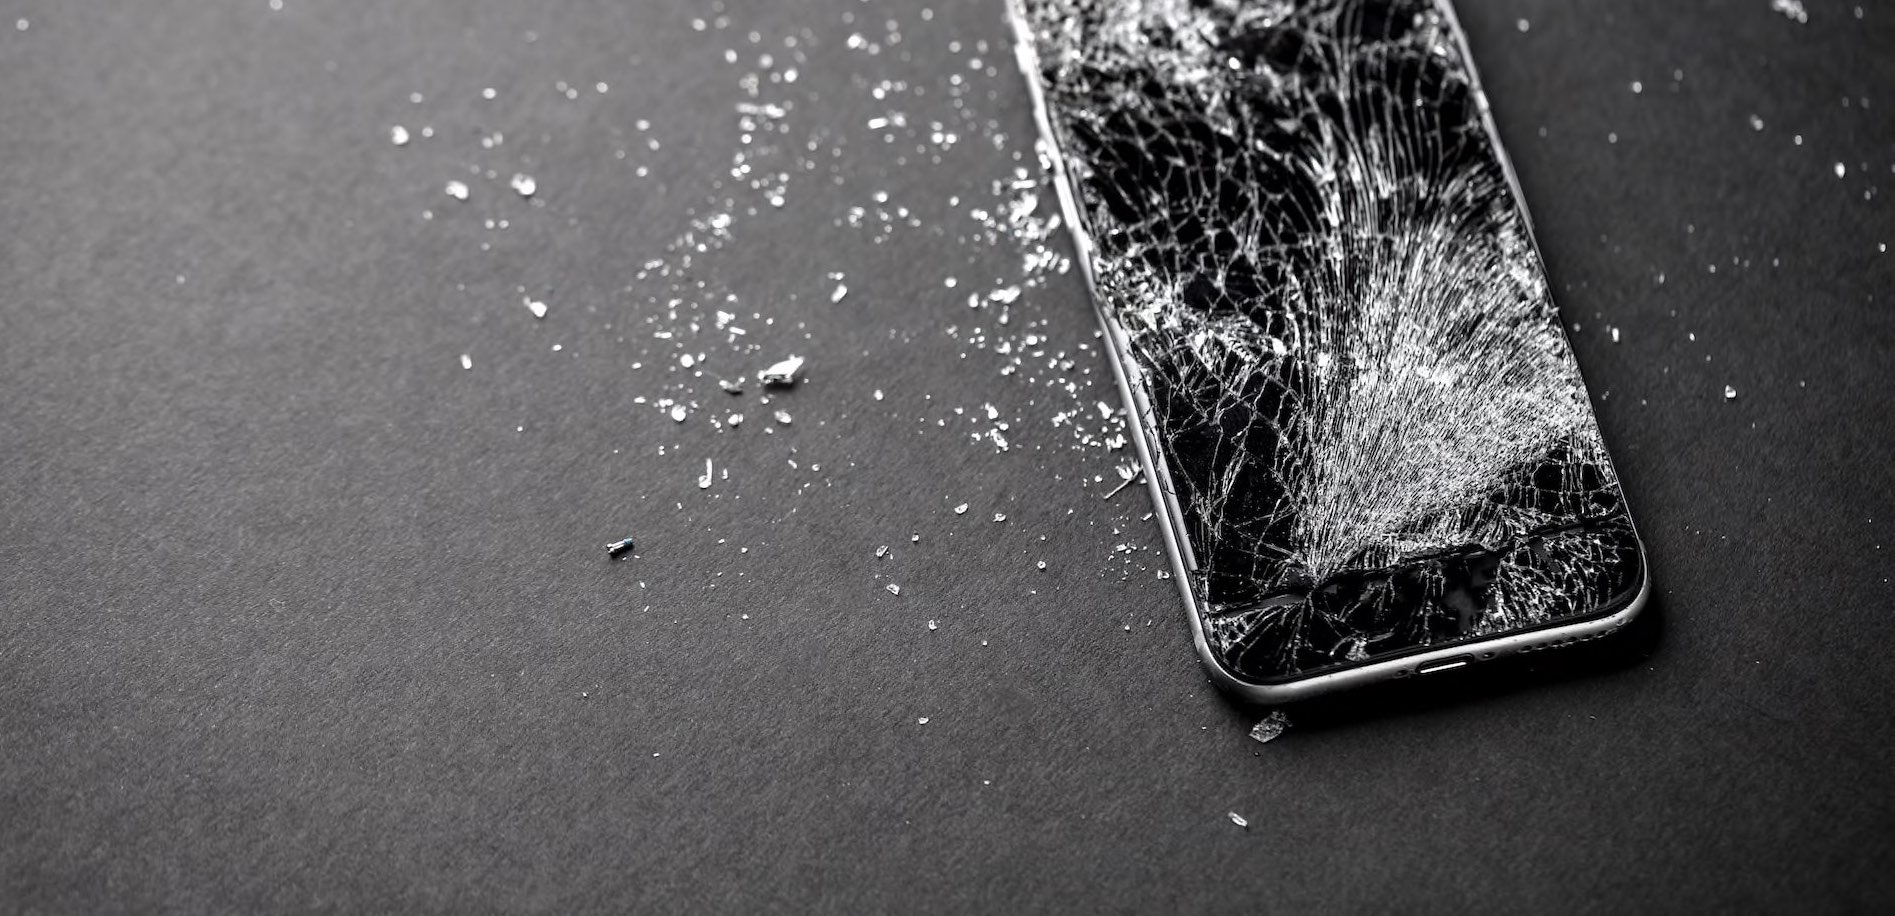 Smashed iPhone Screen Repair 3